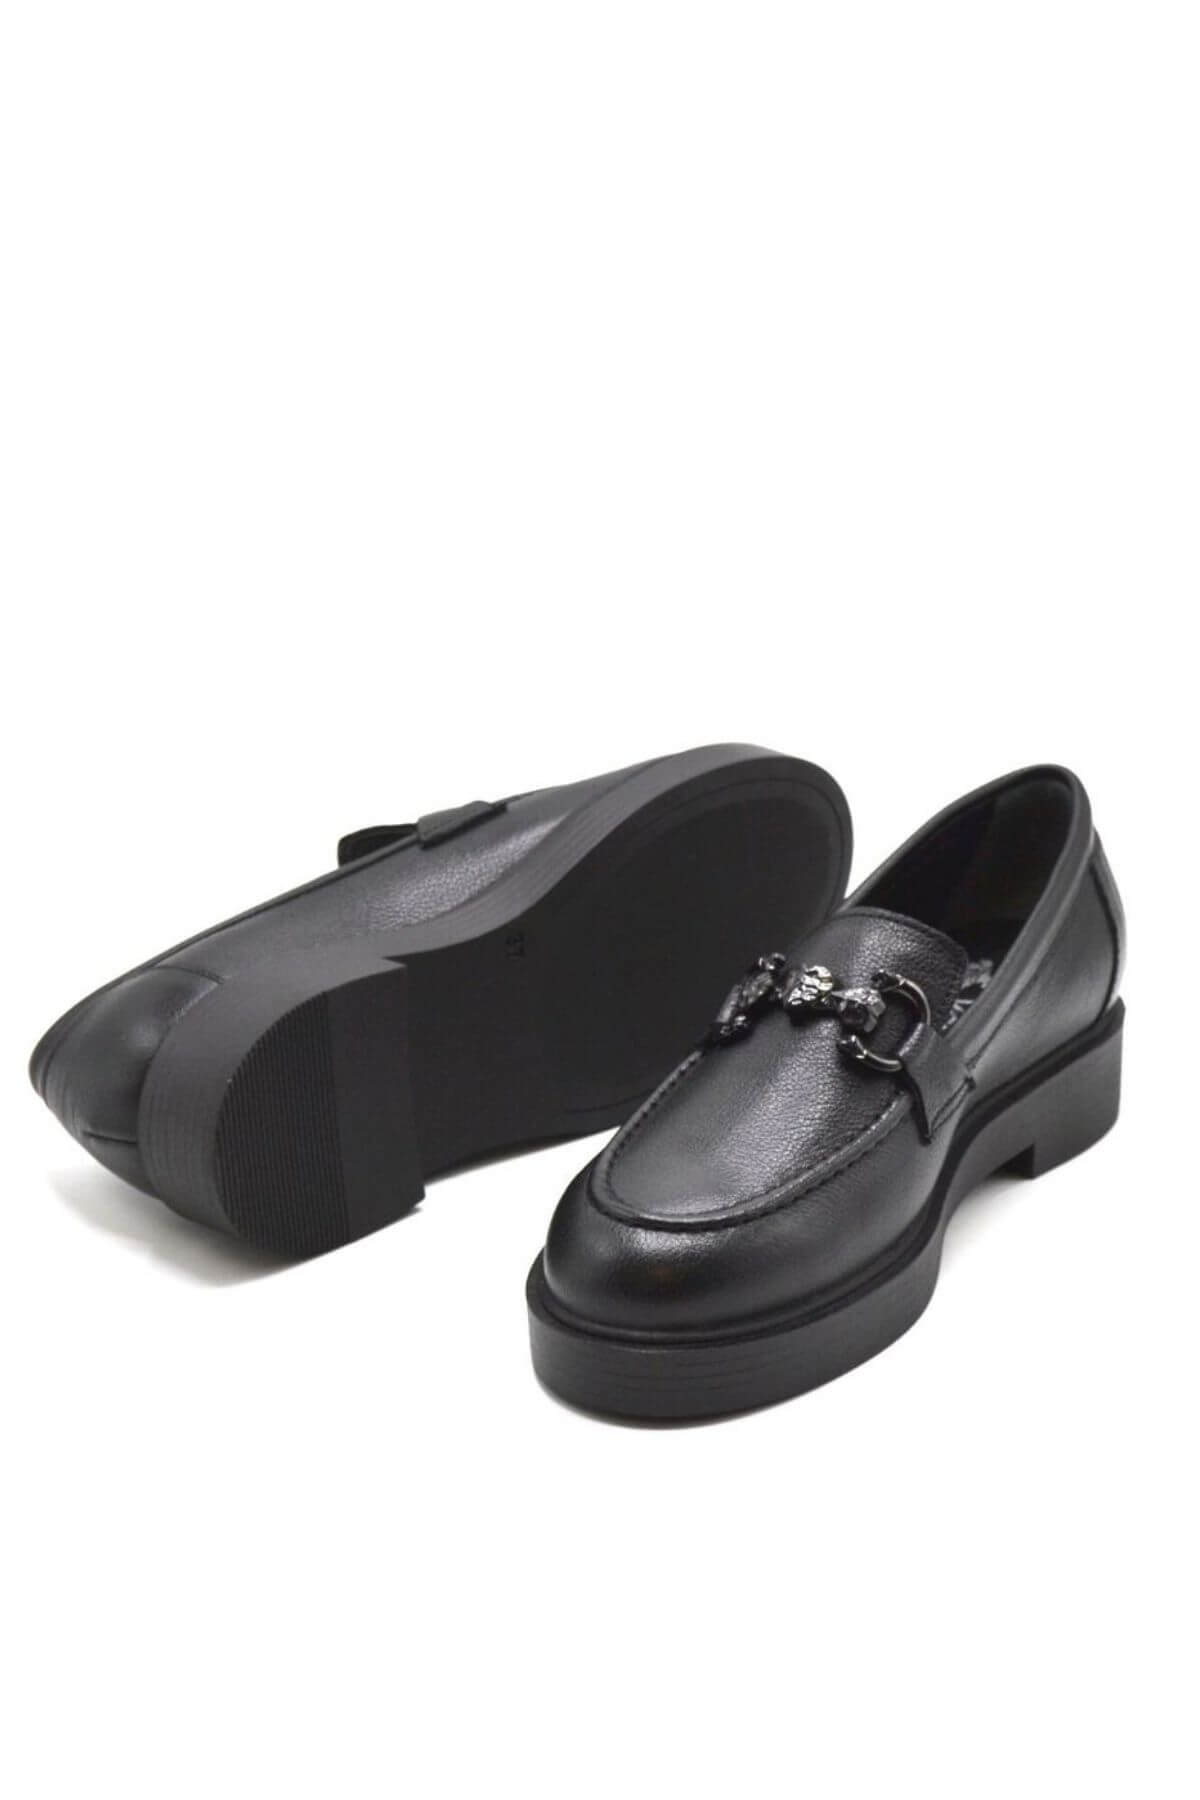 Kadın Deri Ayakkabı Siyah 2352905K - Thumbnail